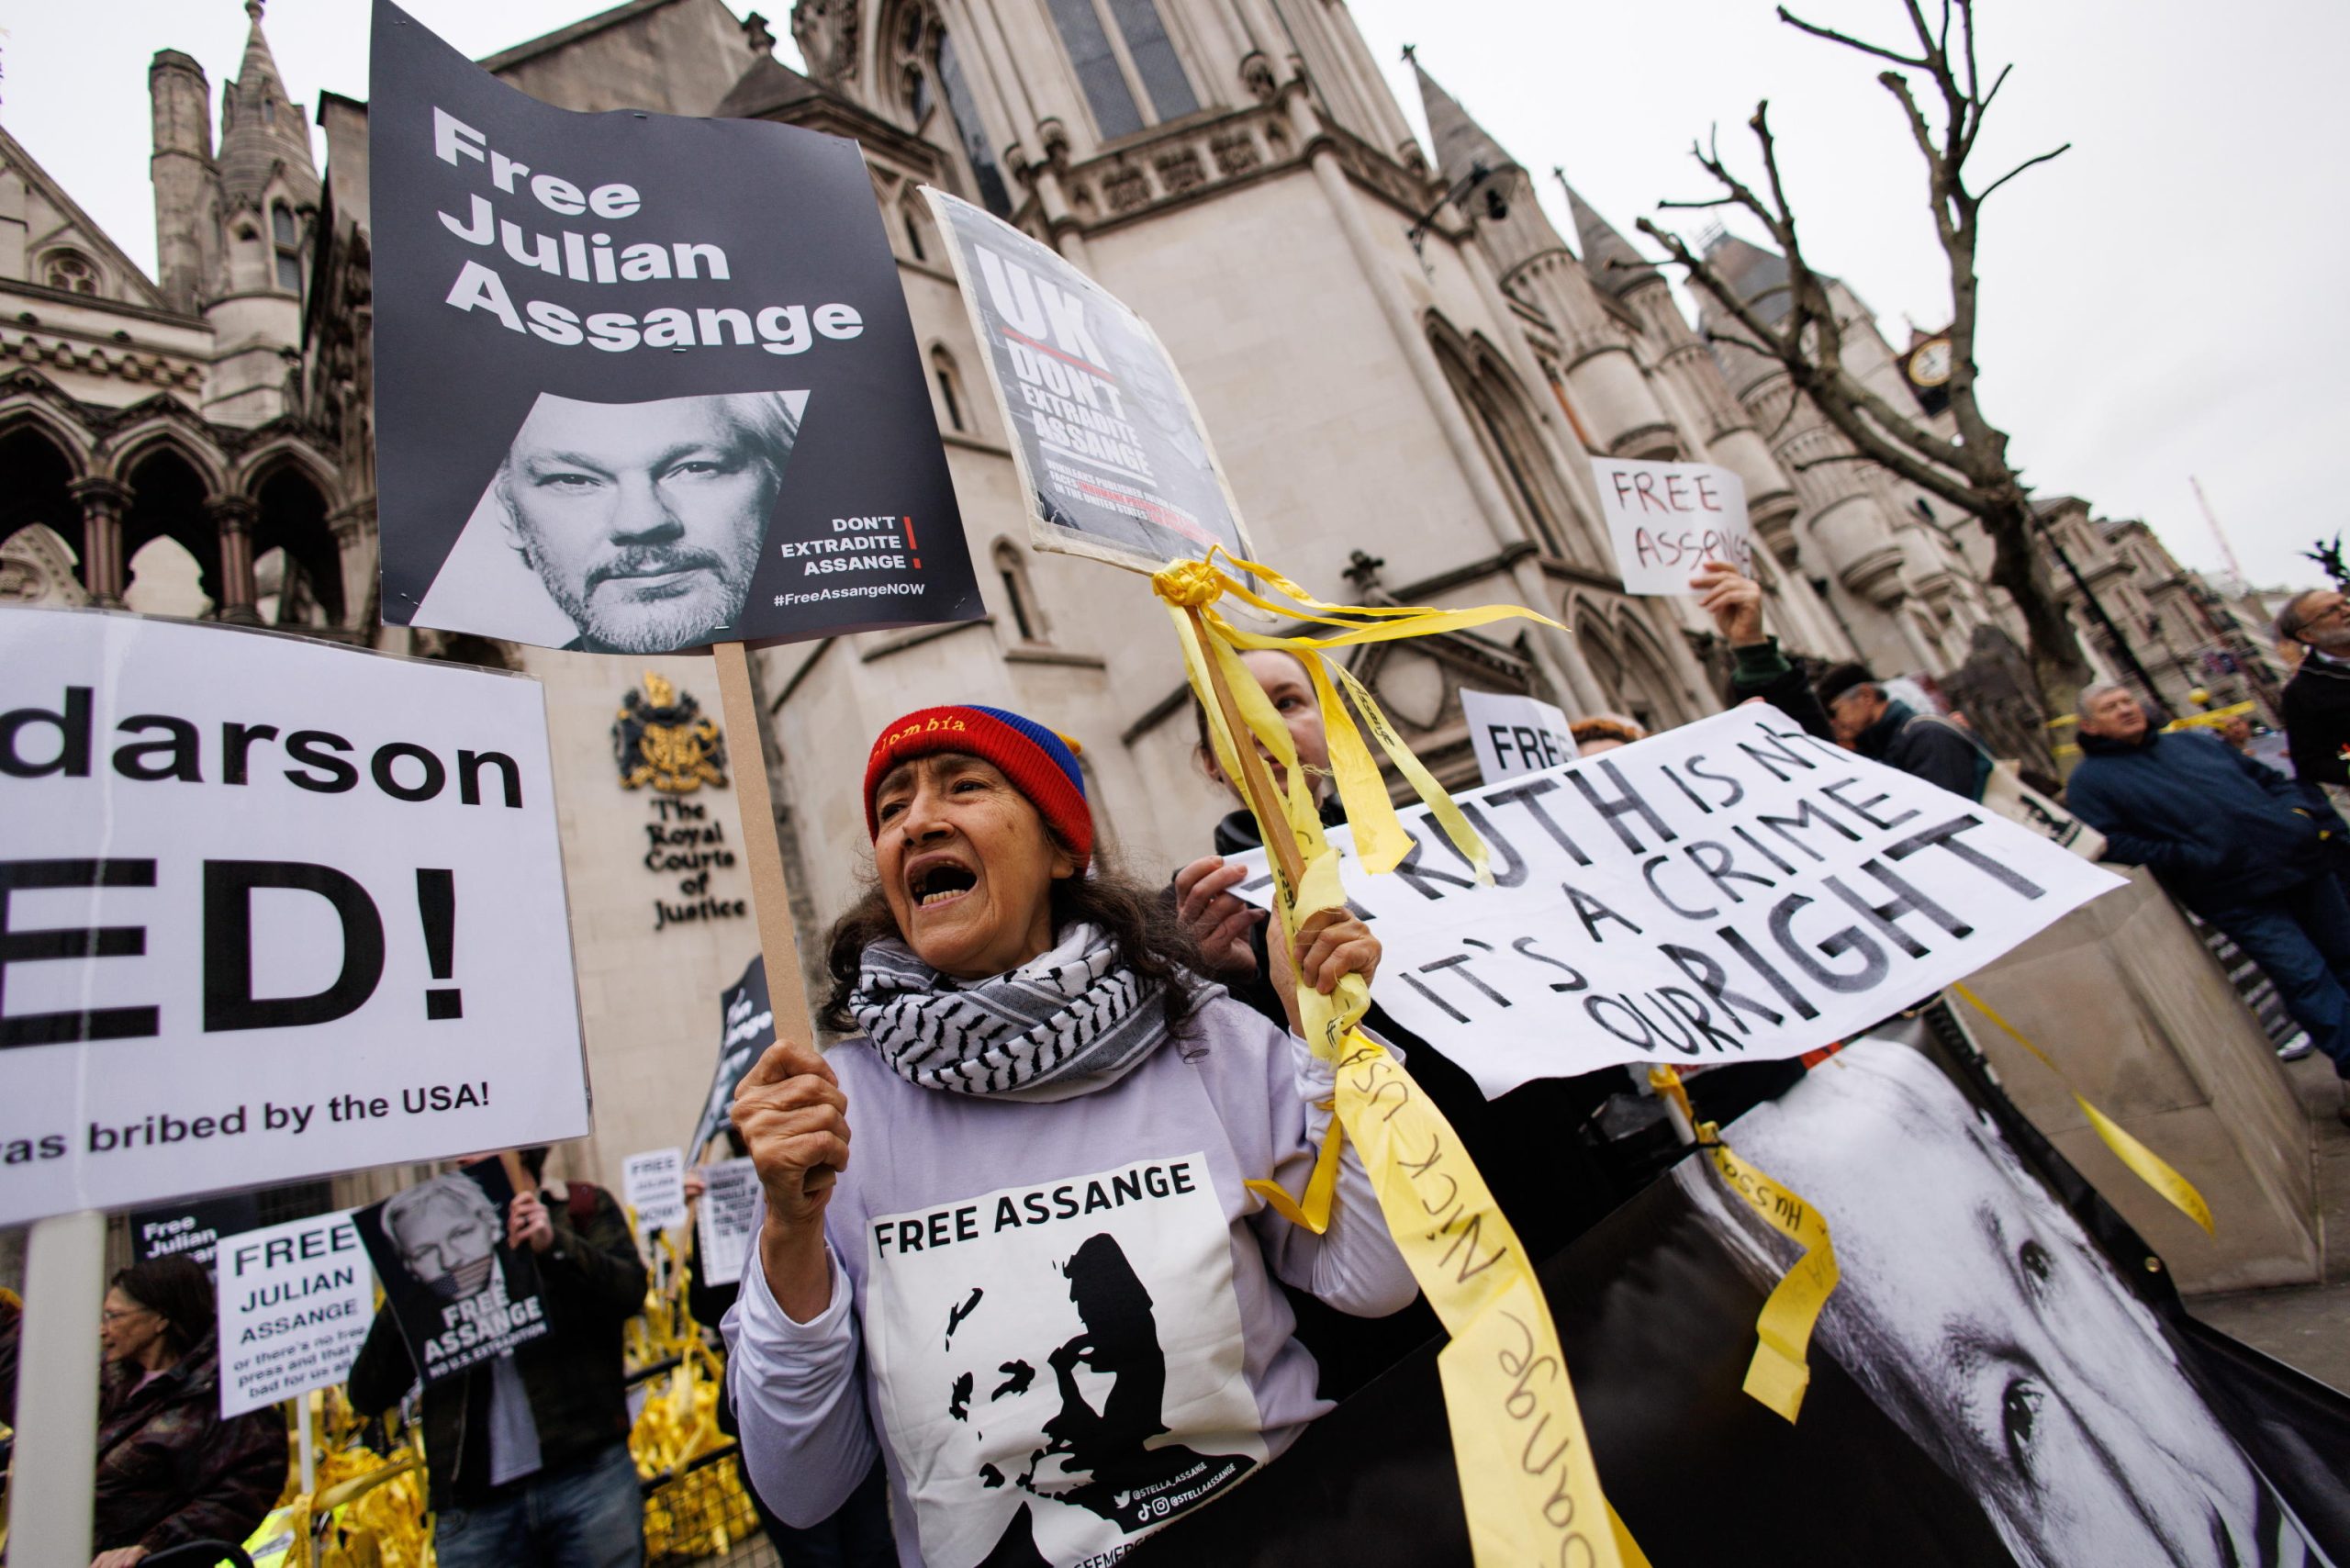 Attivisti pro-Assange protestano davanti alla Corte reale di giustizia prima dell'udienza.